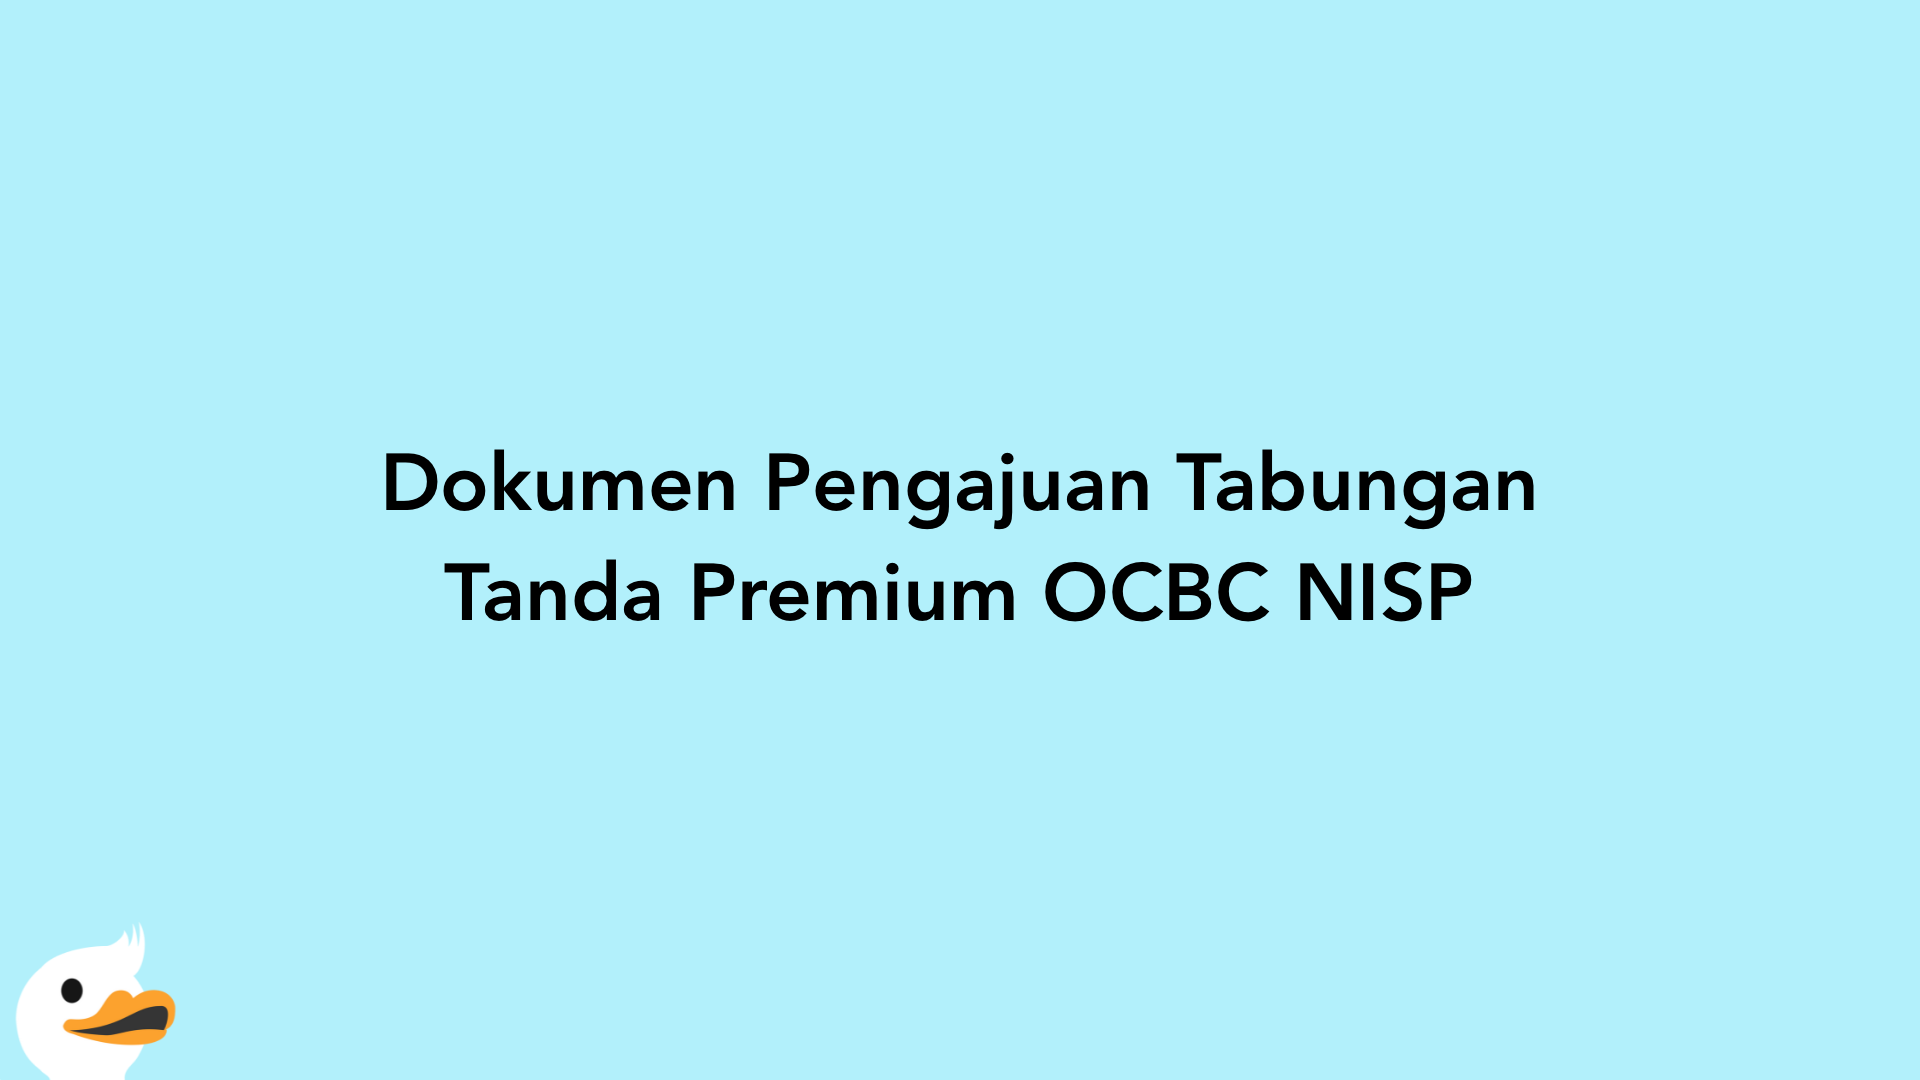 Dokumen Pengajuan Tabungan Tanda Premium OCBC NISP